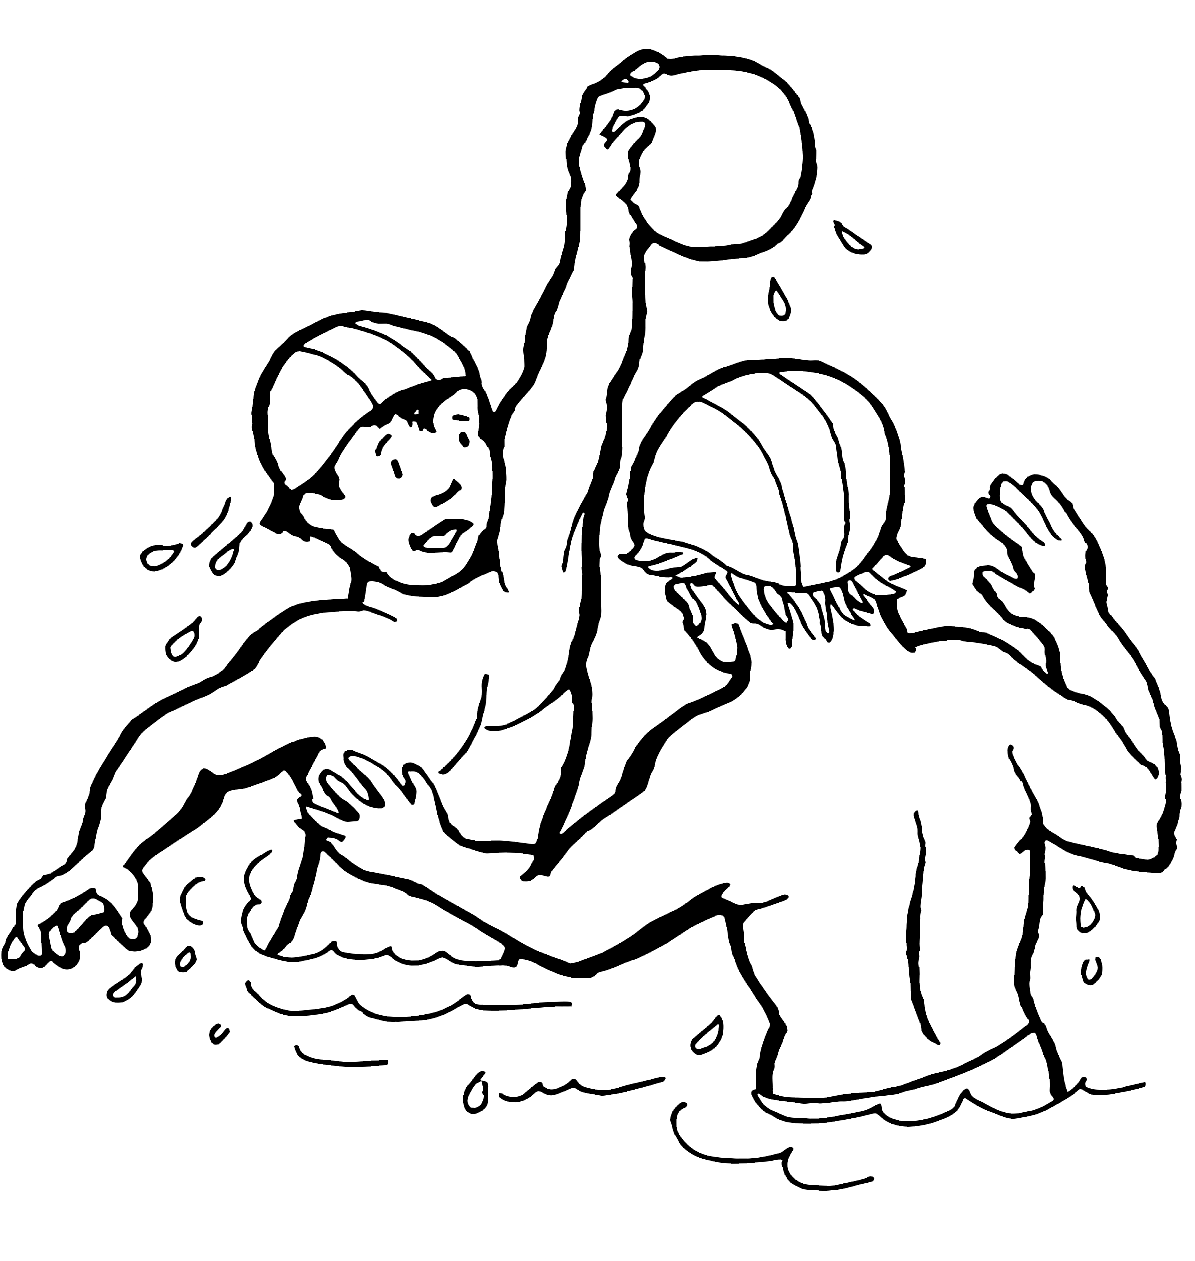 孩子们从水上运动中打水球